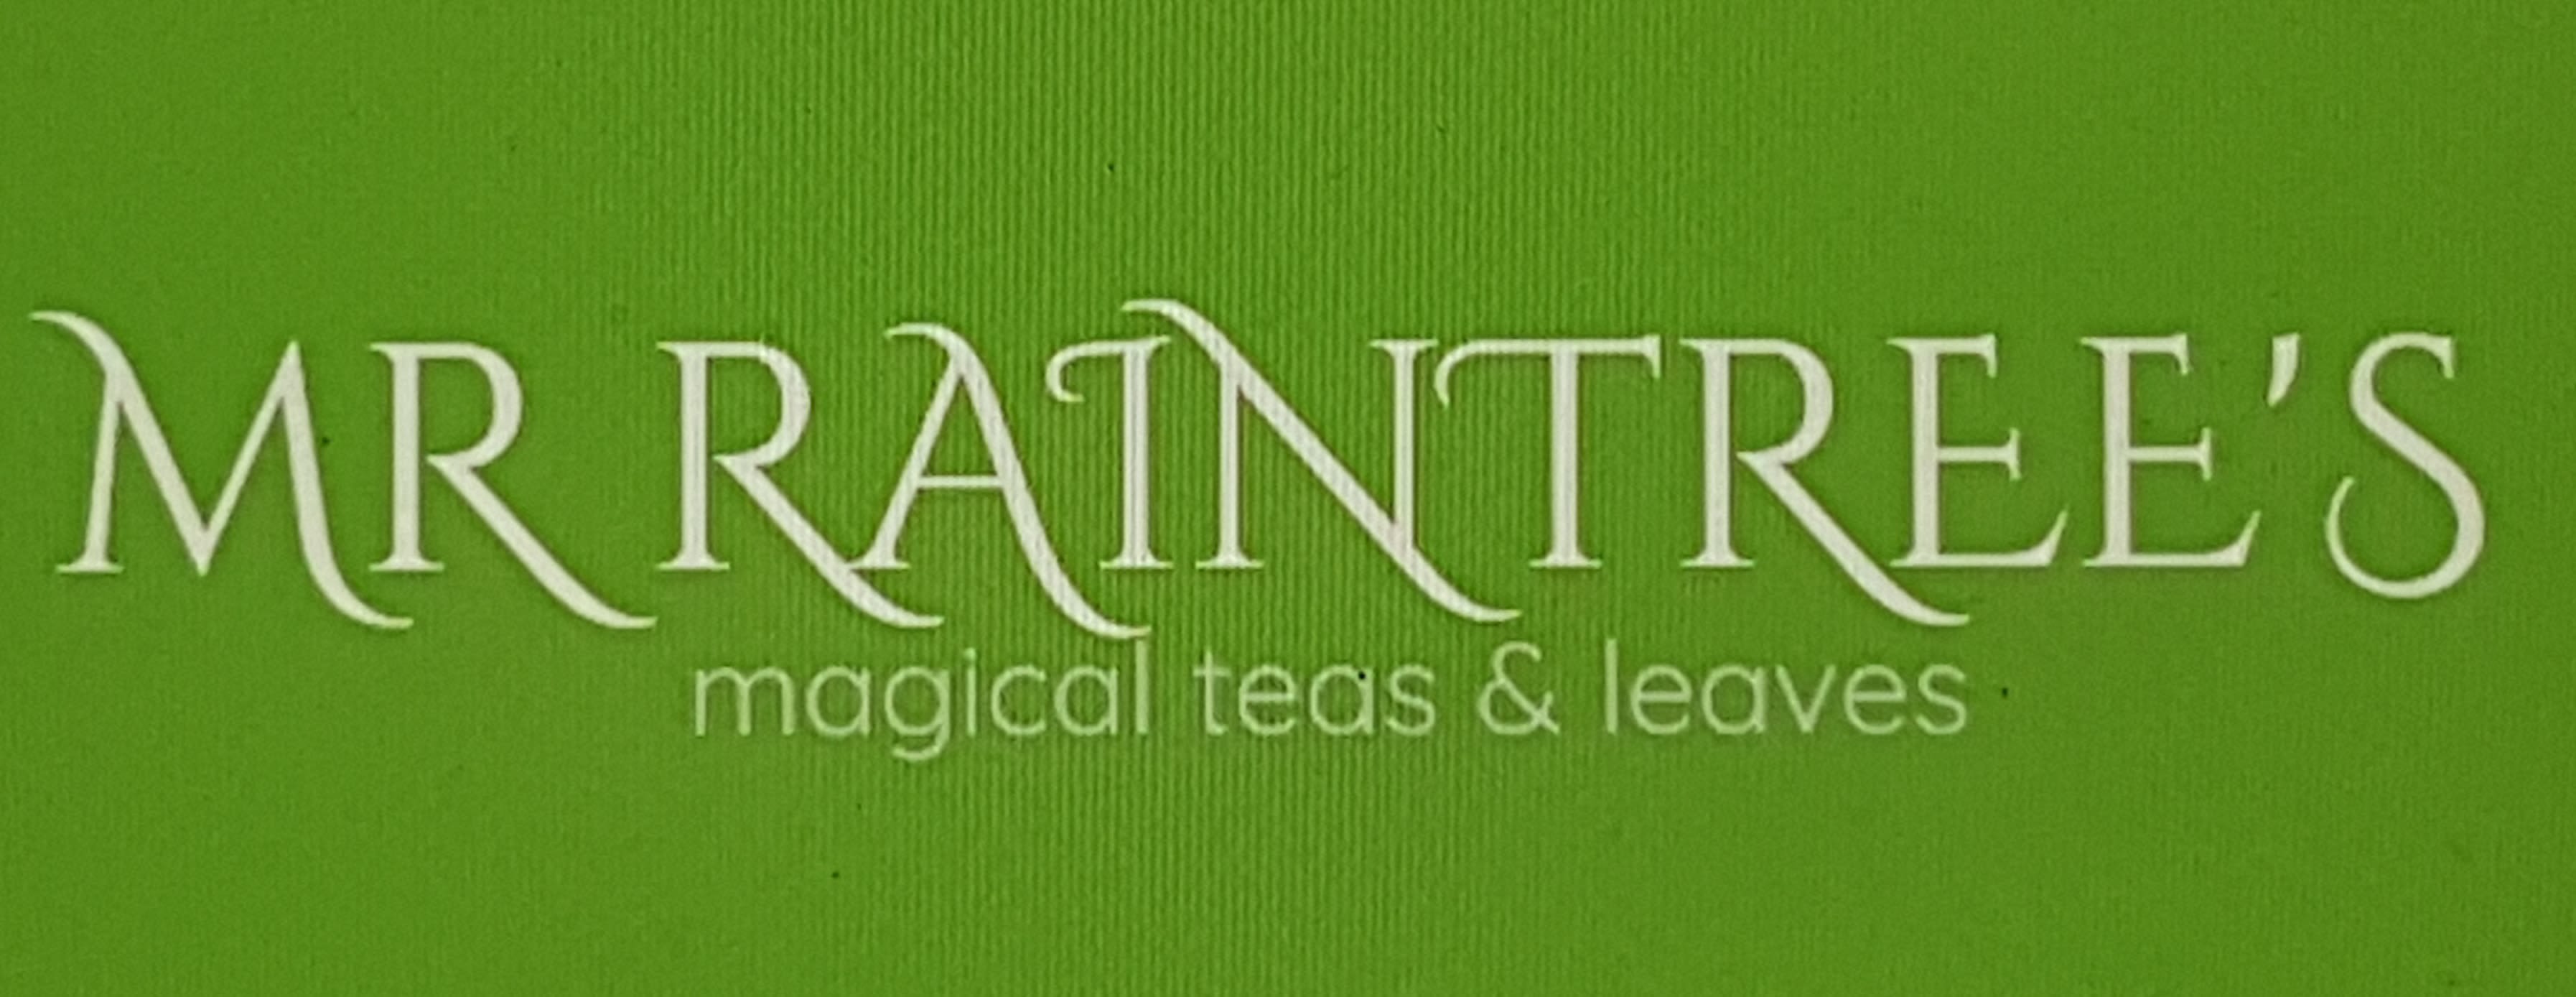 Mr Raintree's ~ Magical Tea's & Leaves